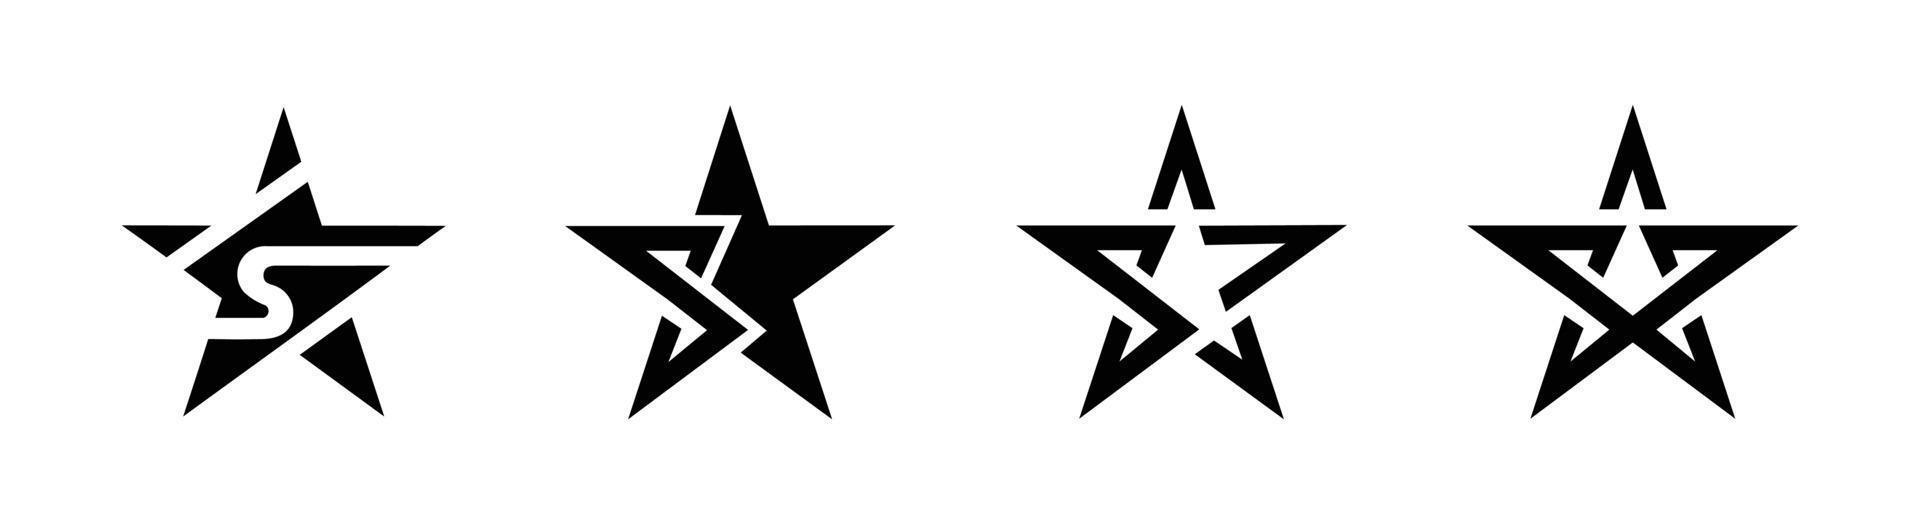 ster logo sjabloon vector, ster vector iconen set symbolen geïsoleerd.